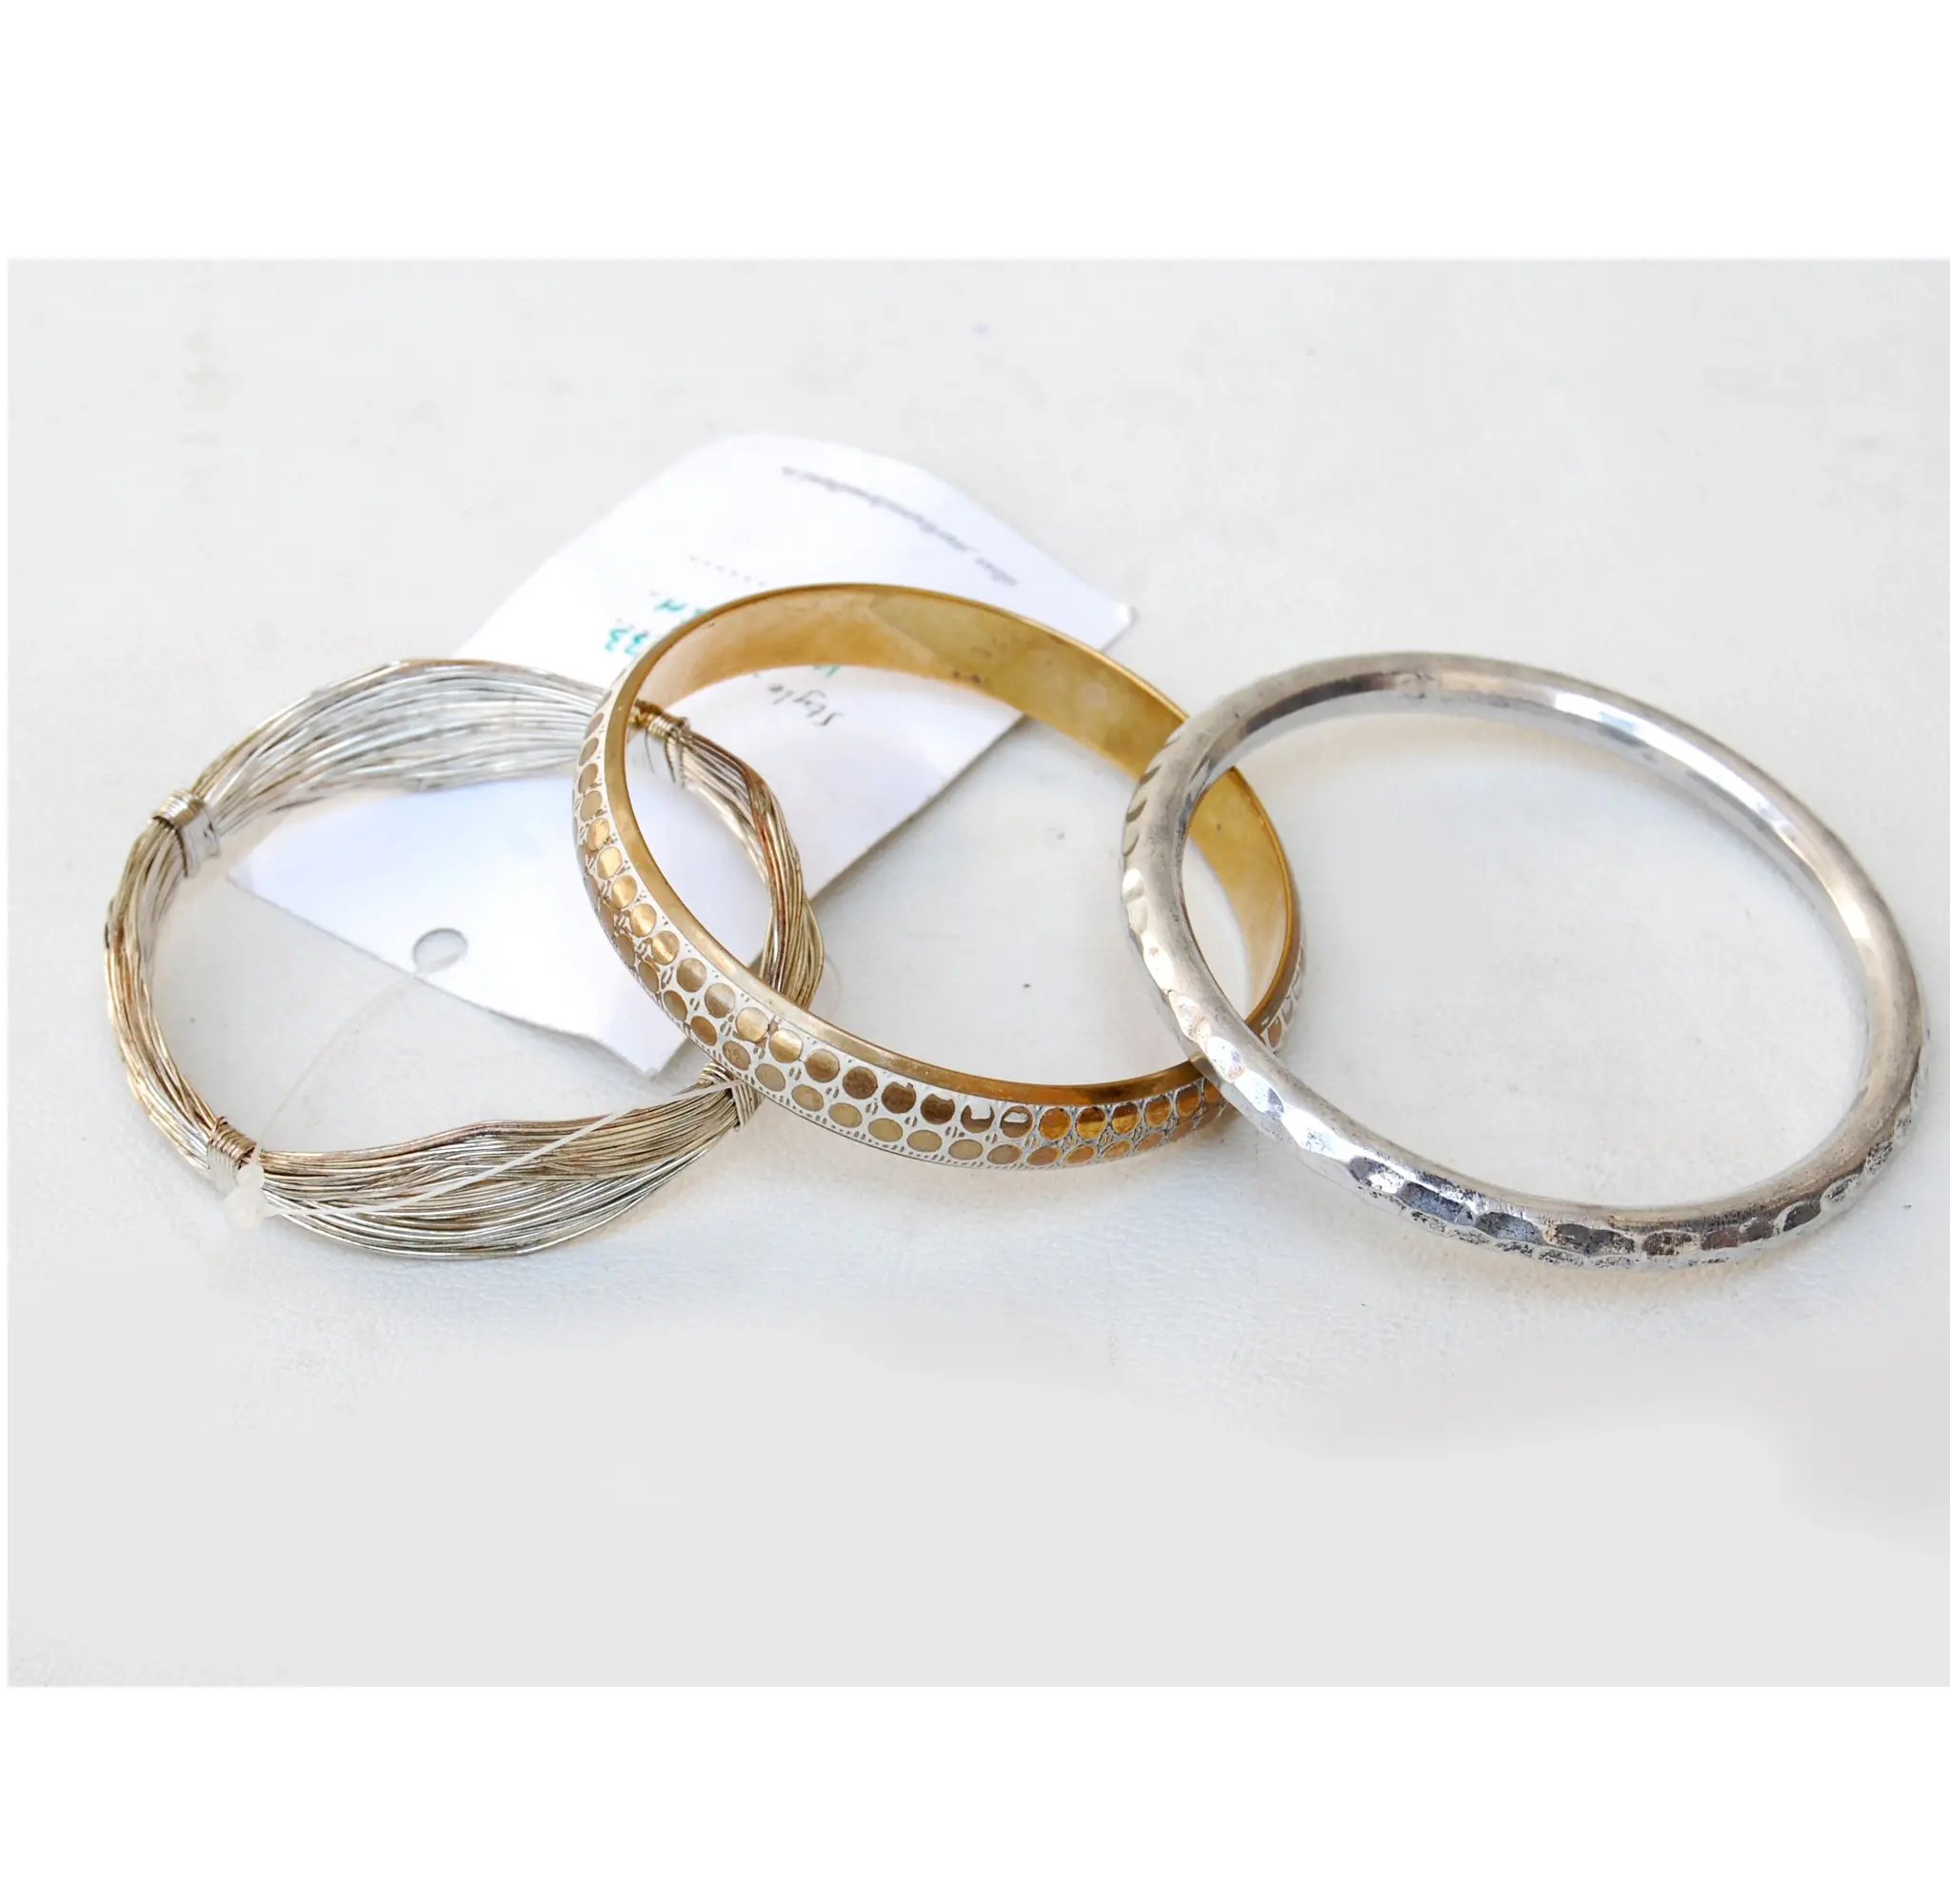 Armbanden Voor Bridal Wedding En Indiase Etnische Mode Sieraden Voor Vrouwen En Meisjes Armband Voor Vrouwen Meisjes En Marketing